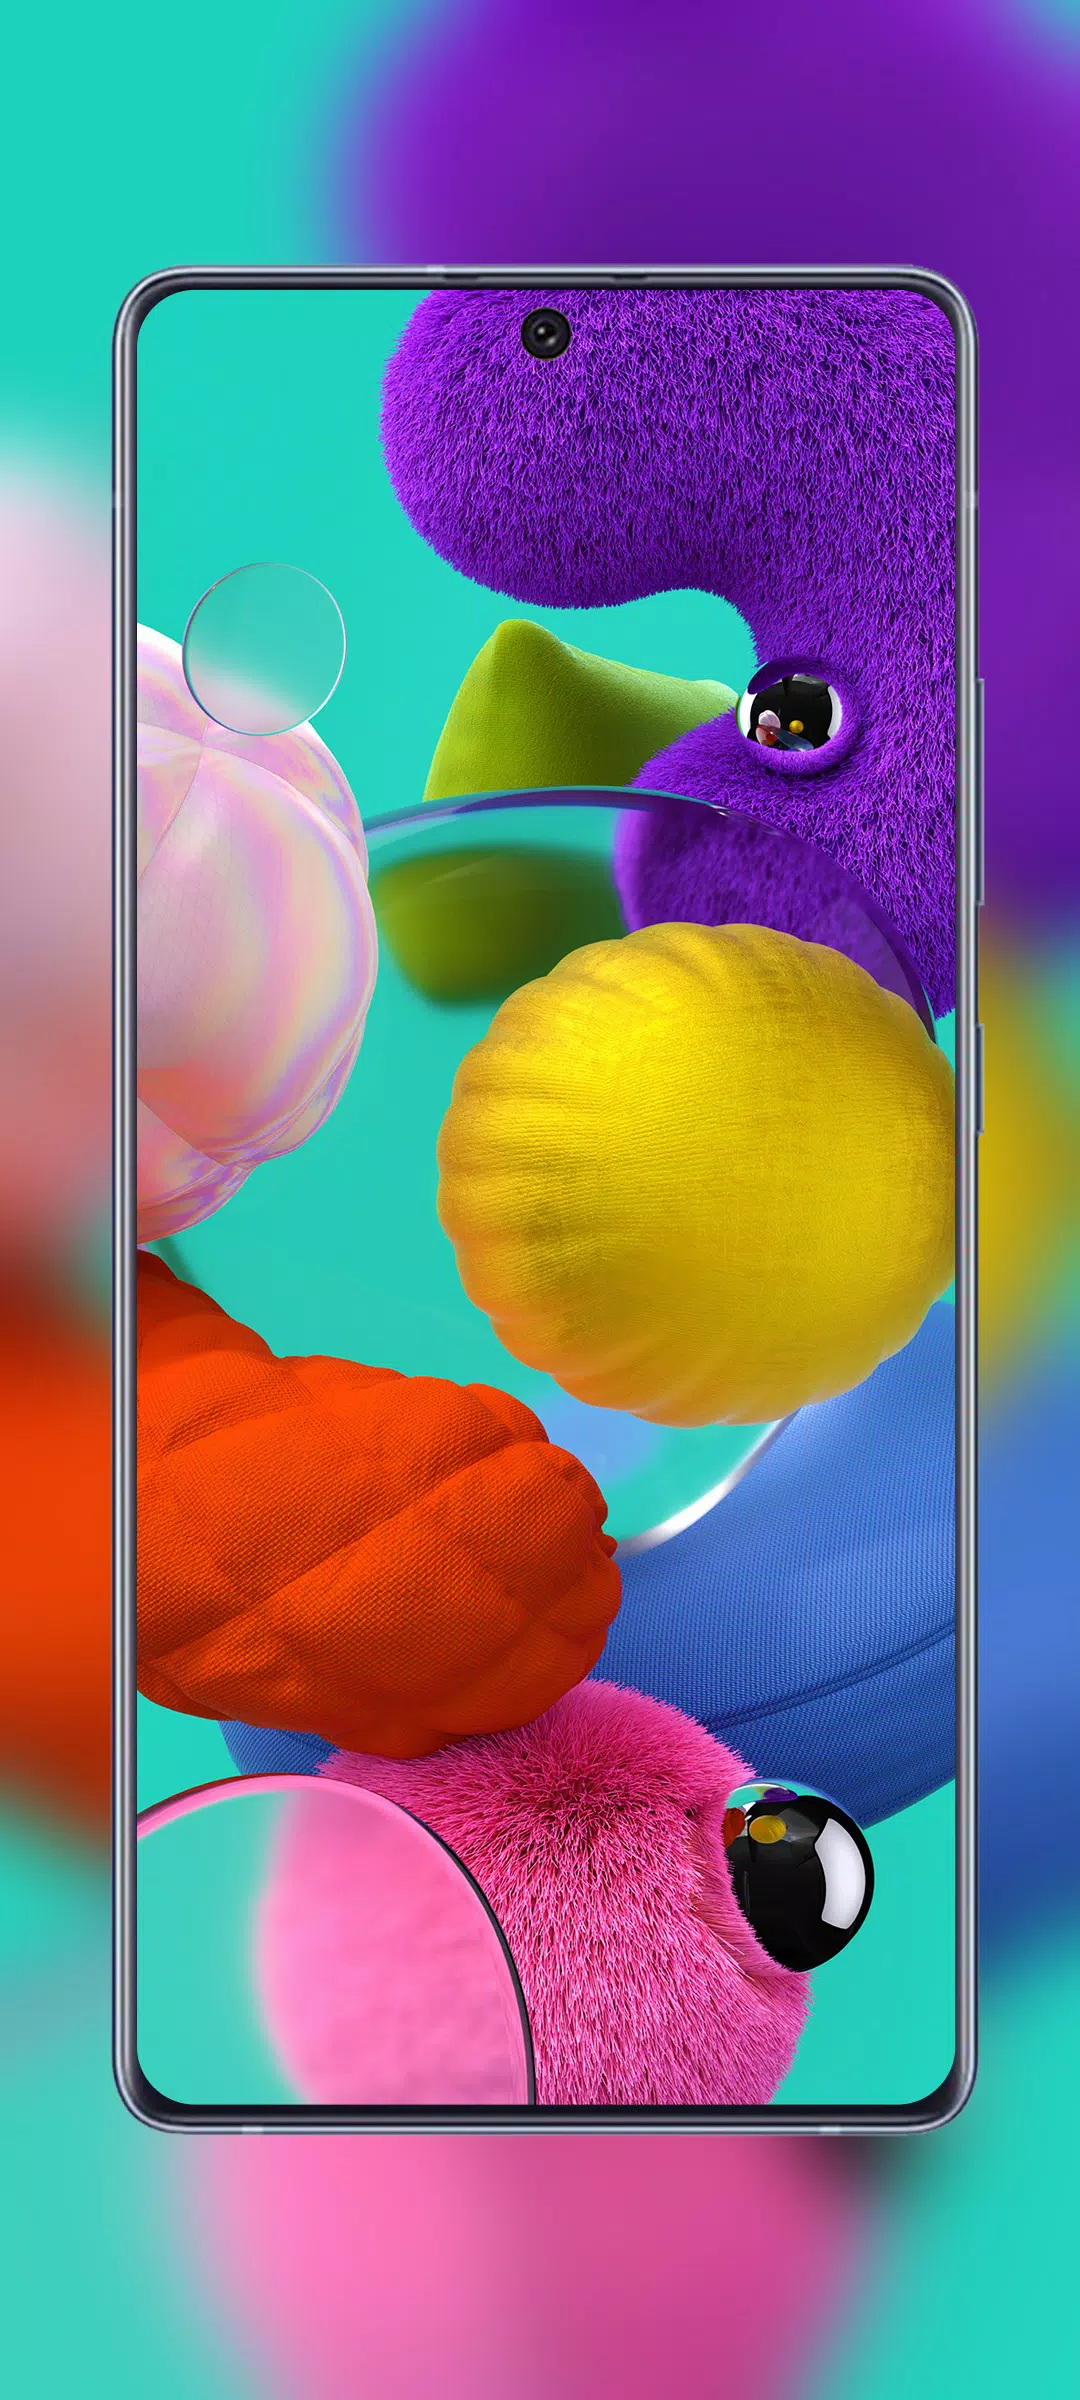 Với các hình nền đậm chất Samsung A52 mang đến, đảm bảo bạn sẽ phải trầm trồ vì sự tuyệt vời của chúng. Với giai điệu đa dạng, từ hiện đại đến cổ điển, chắc chắn sẽ khiến bạn bất ngờ và thực sự hài lòng về bộ sưu tập này.